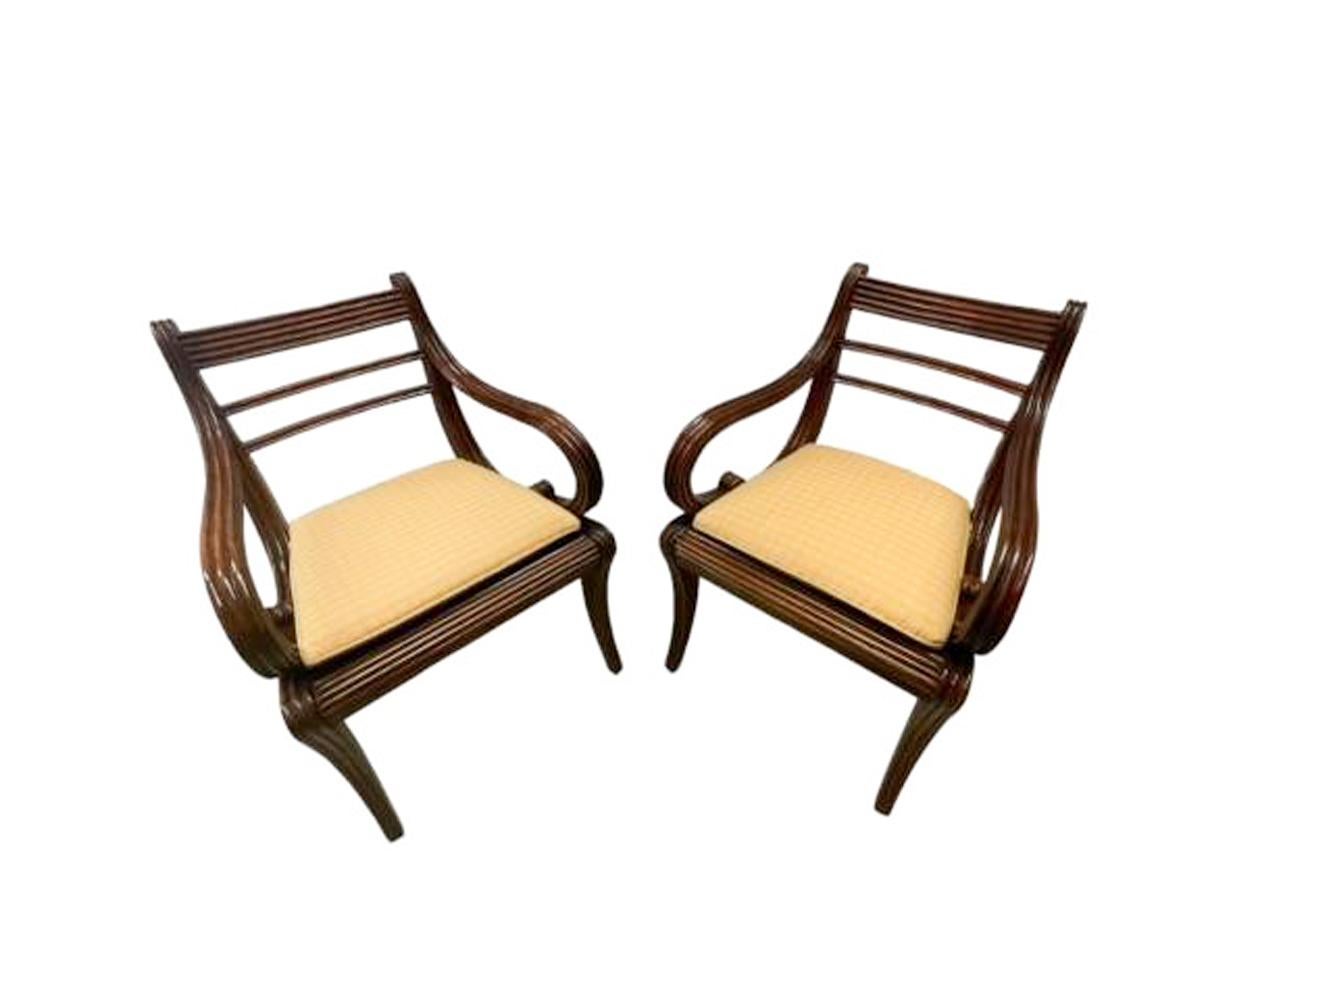 Belle paire de fauteuils en acajou sculpté anglo-indien dans le goût Regency anglais. Les faces avant et latérales sont sculptées de surfaces cannelées, le dossier s'incurve vers l'arrière au niveau de la traverse de la crête, avec des accoudoirs